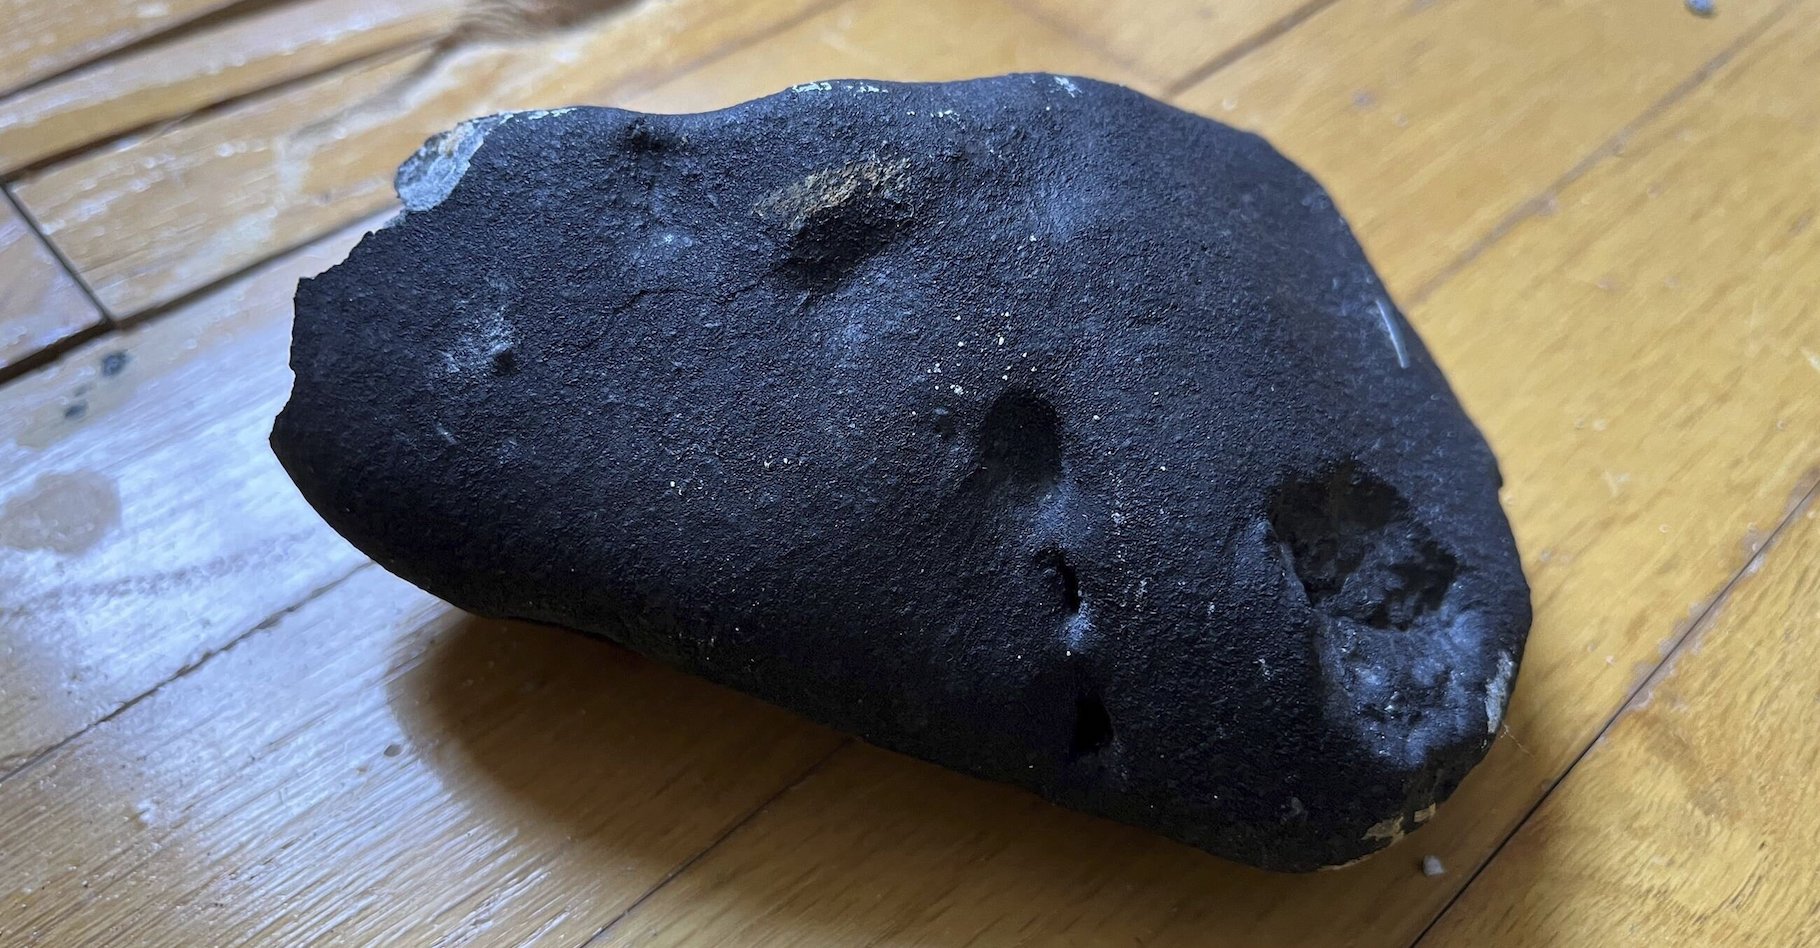 Une météorite rare a terminé sa course dans une maison du New Jersey (Etats-Unis) cette semaine. © Hopewell Township Police Department